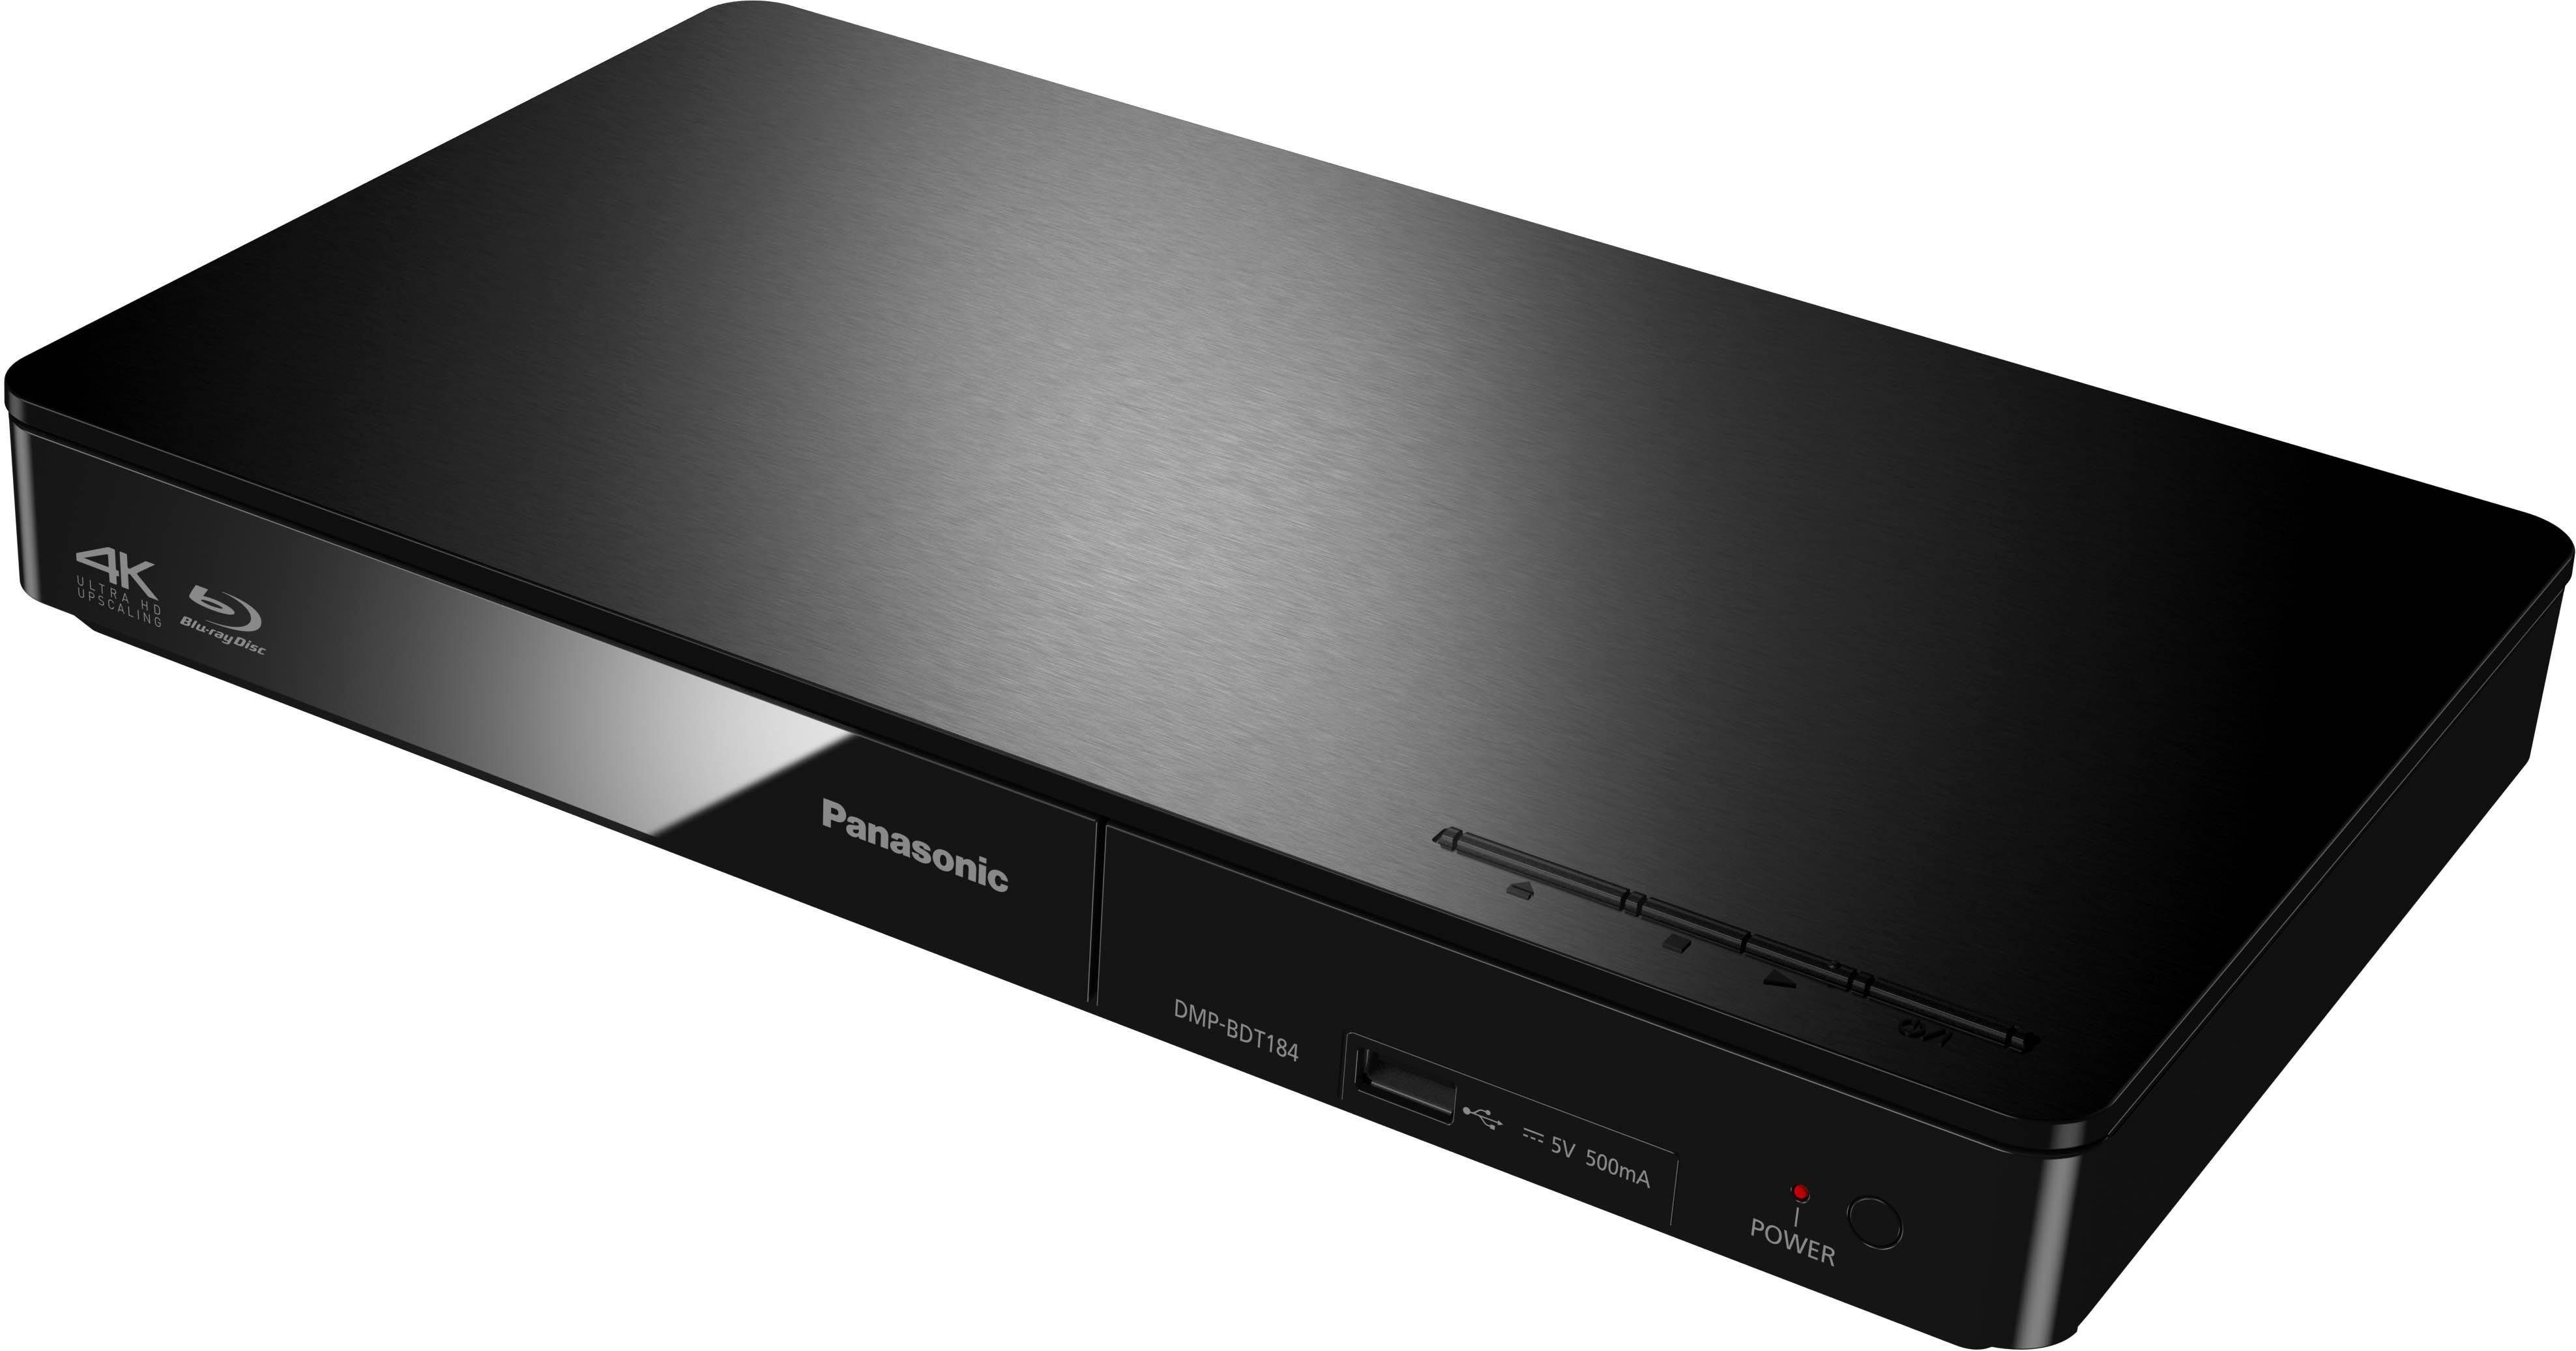 Panasonic Blu-ray-Player (Ethernet), (LAN Schnellstart-Modus) schwarz DMP-BDT184 DMP-BDT185 4K Upscaling, /